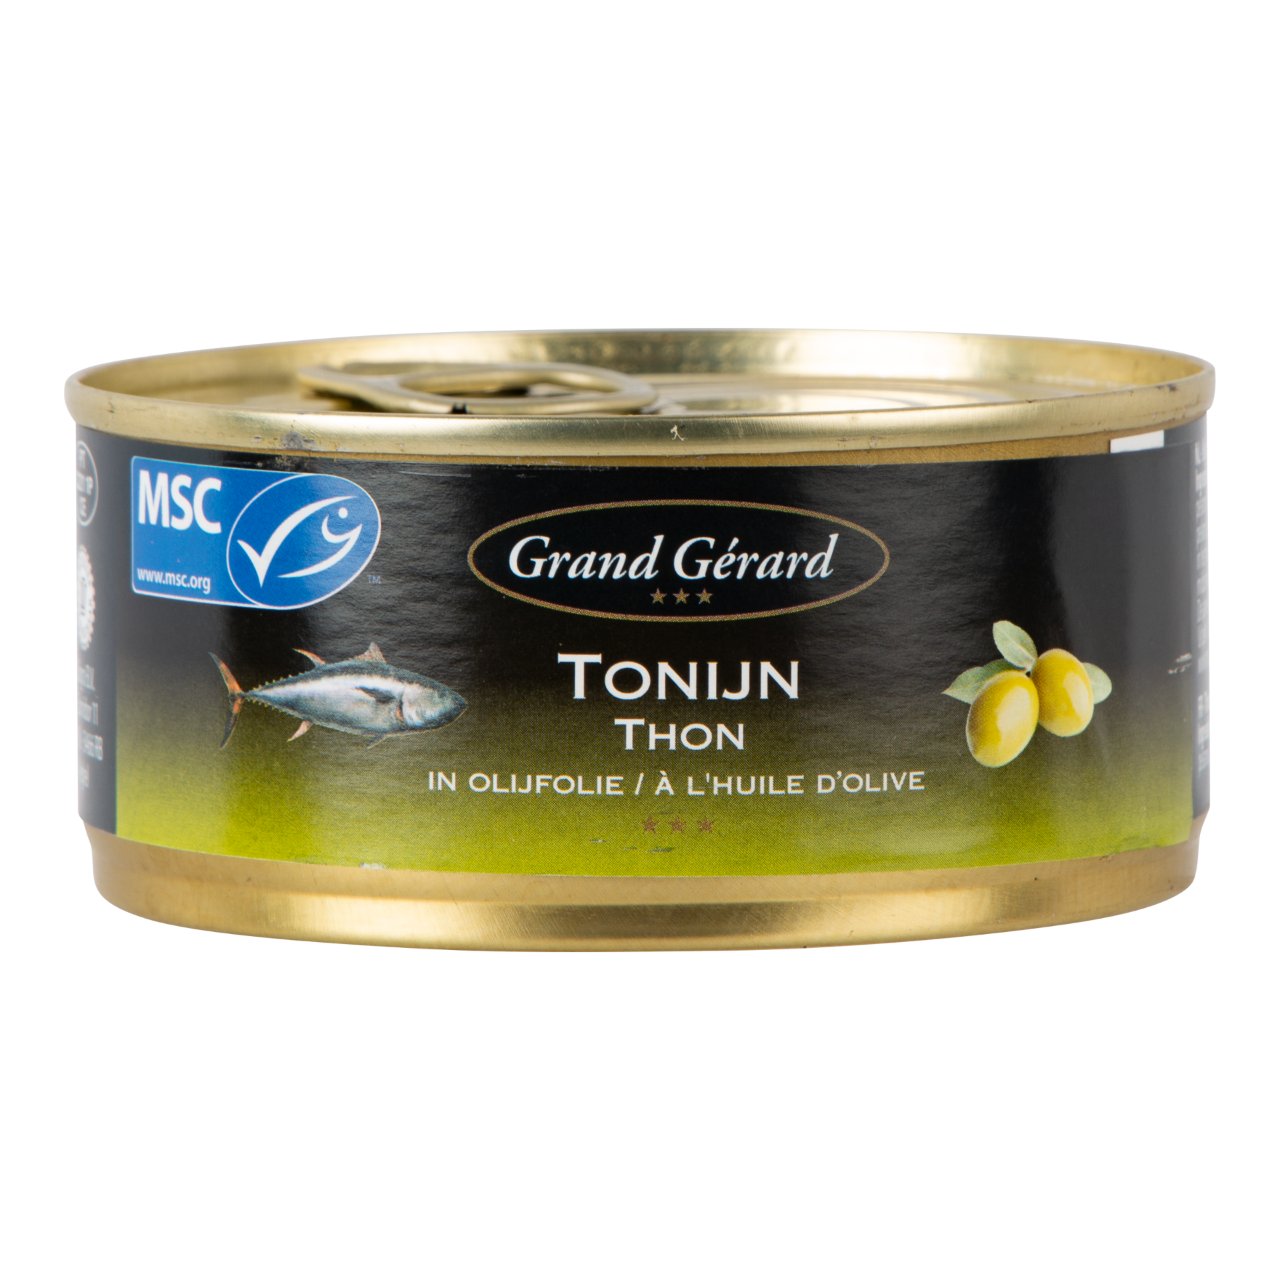 Tonijn in olijfolie